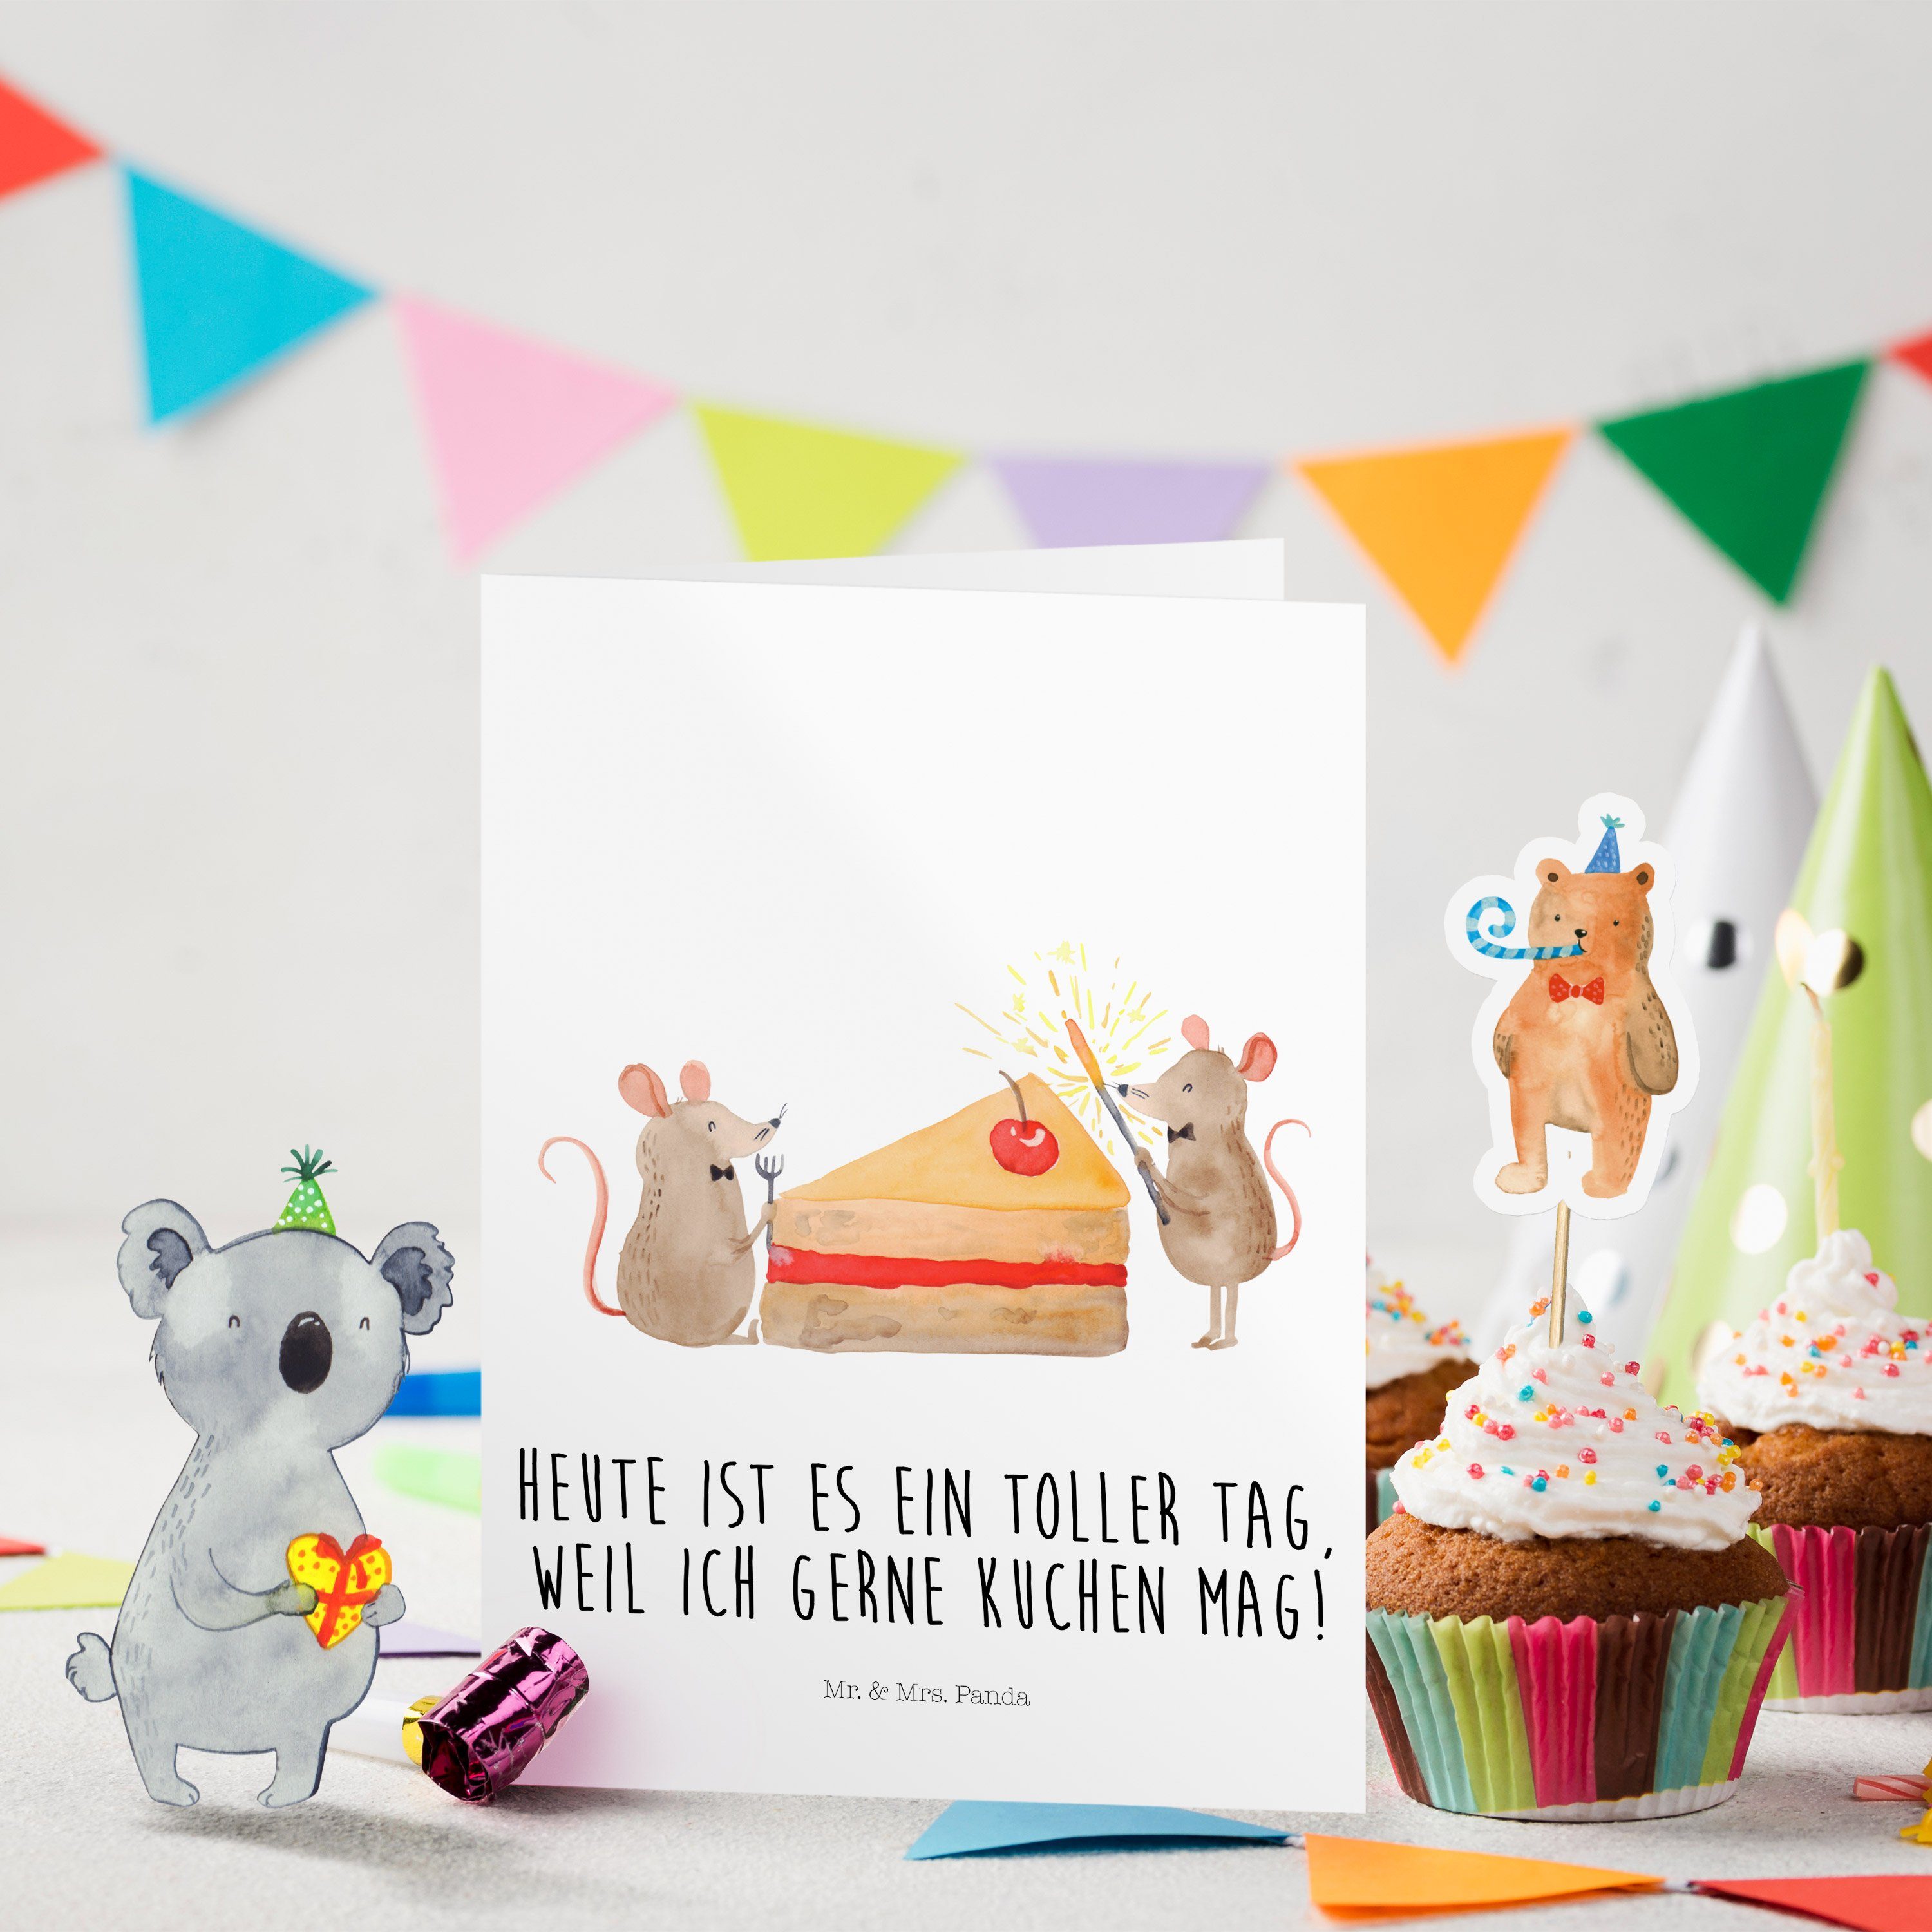 Mr. & Mrs. Panda Geburtstagskarten Mäuse Kuchen - Weiß - Geschenk, Glück, hungrig, Kuchenstück, Geburtst